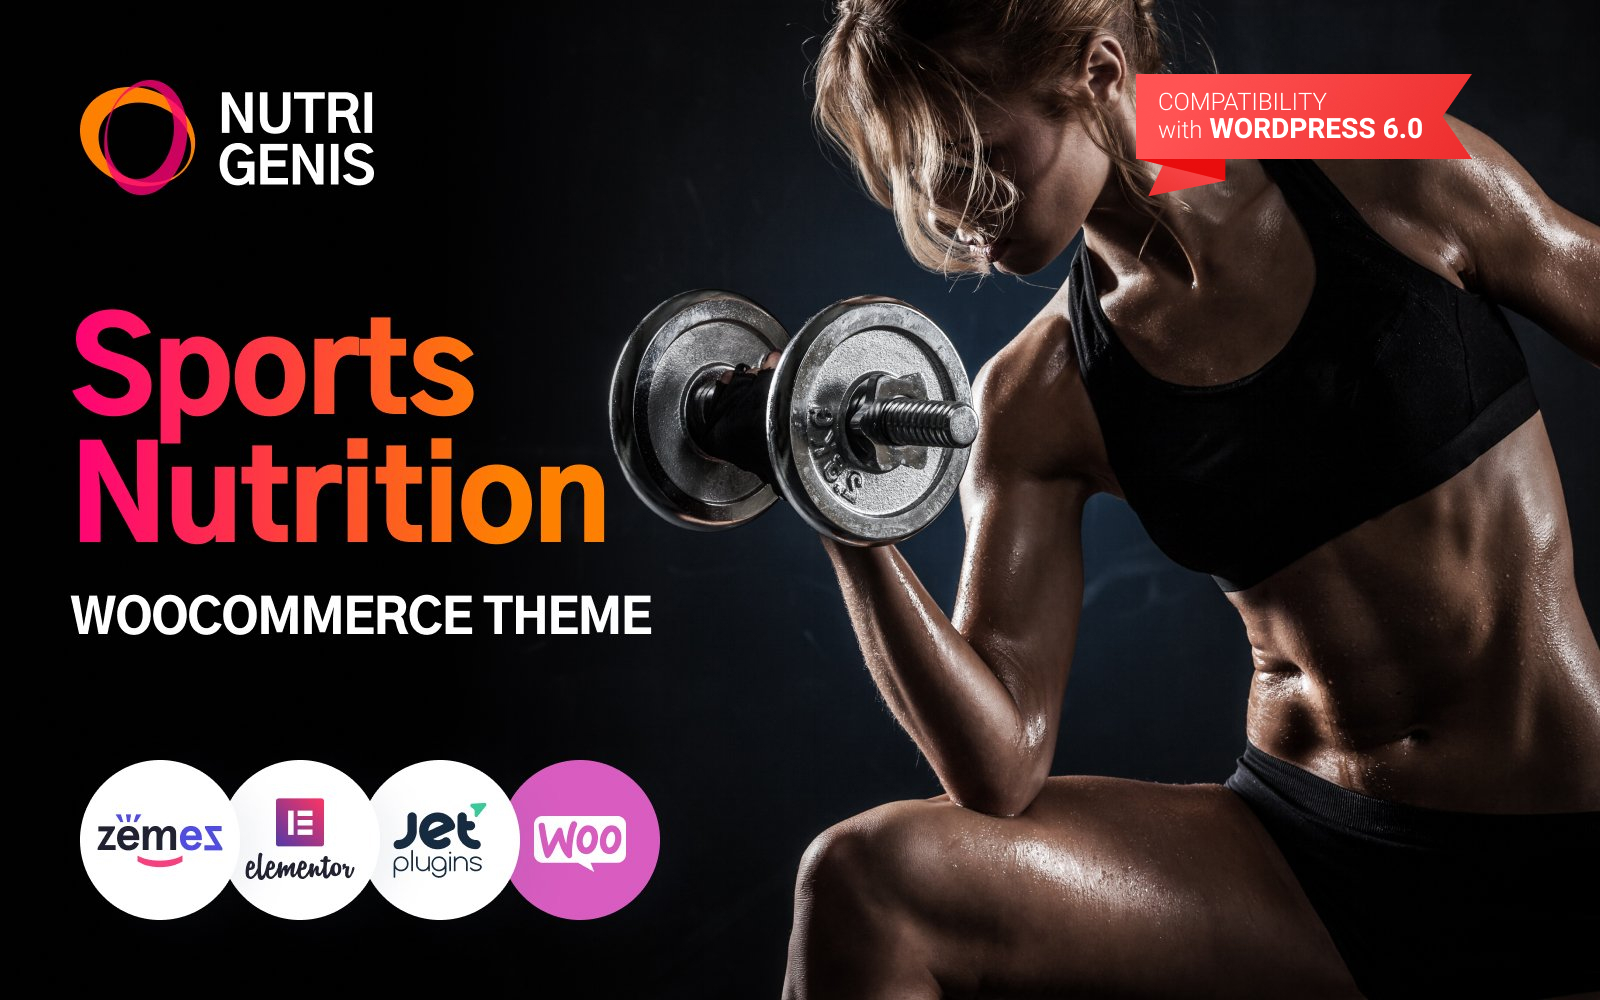 Nutrigenis - Sports Nutrition WordPress Theme